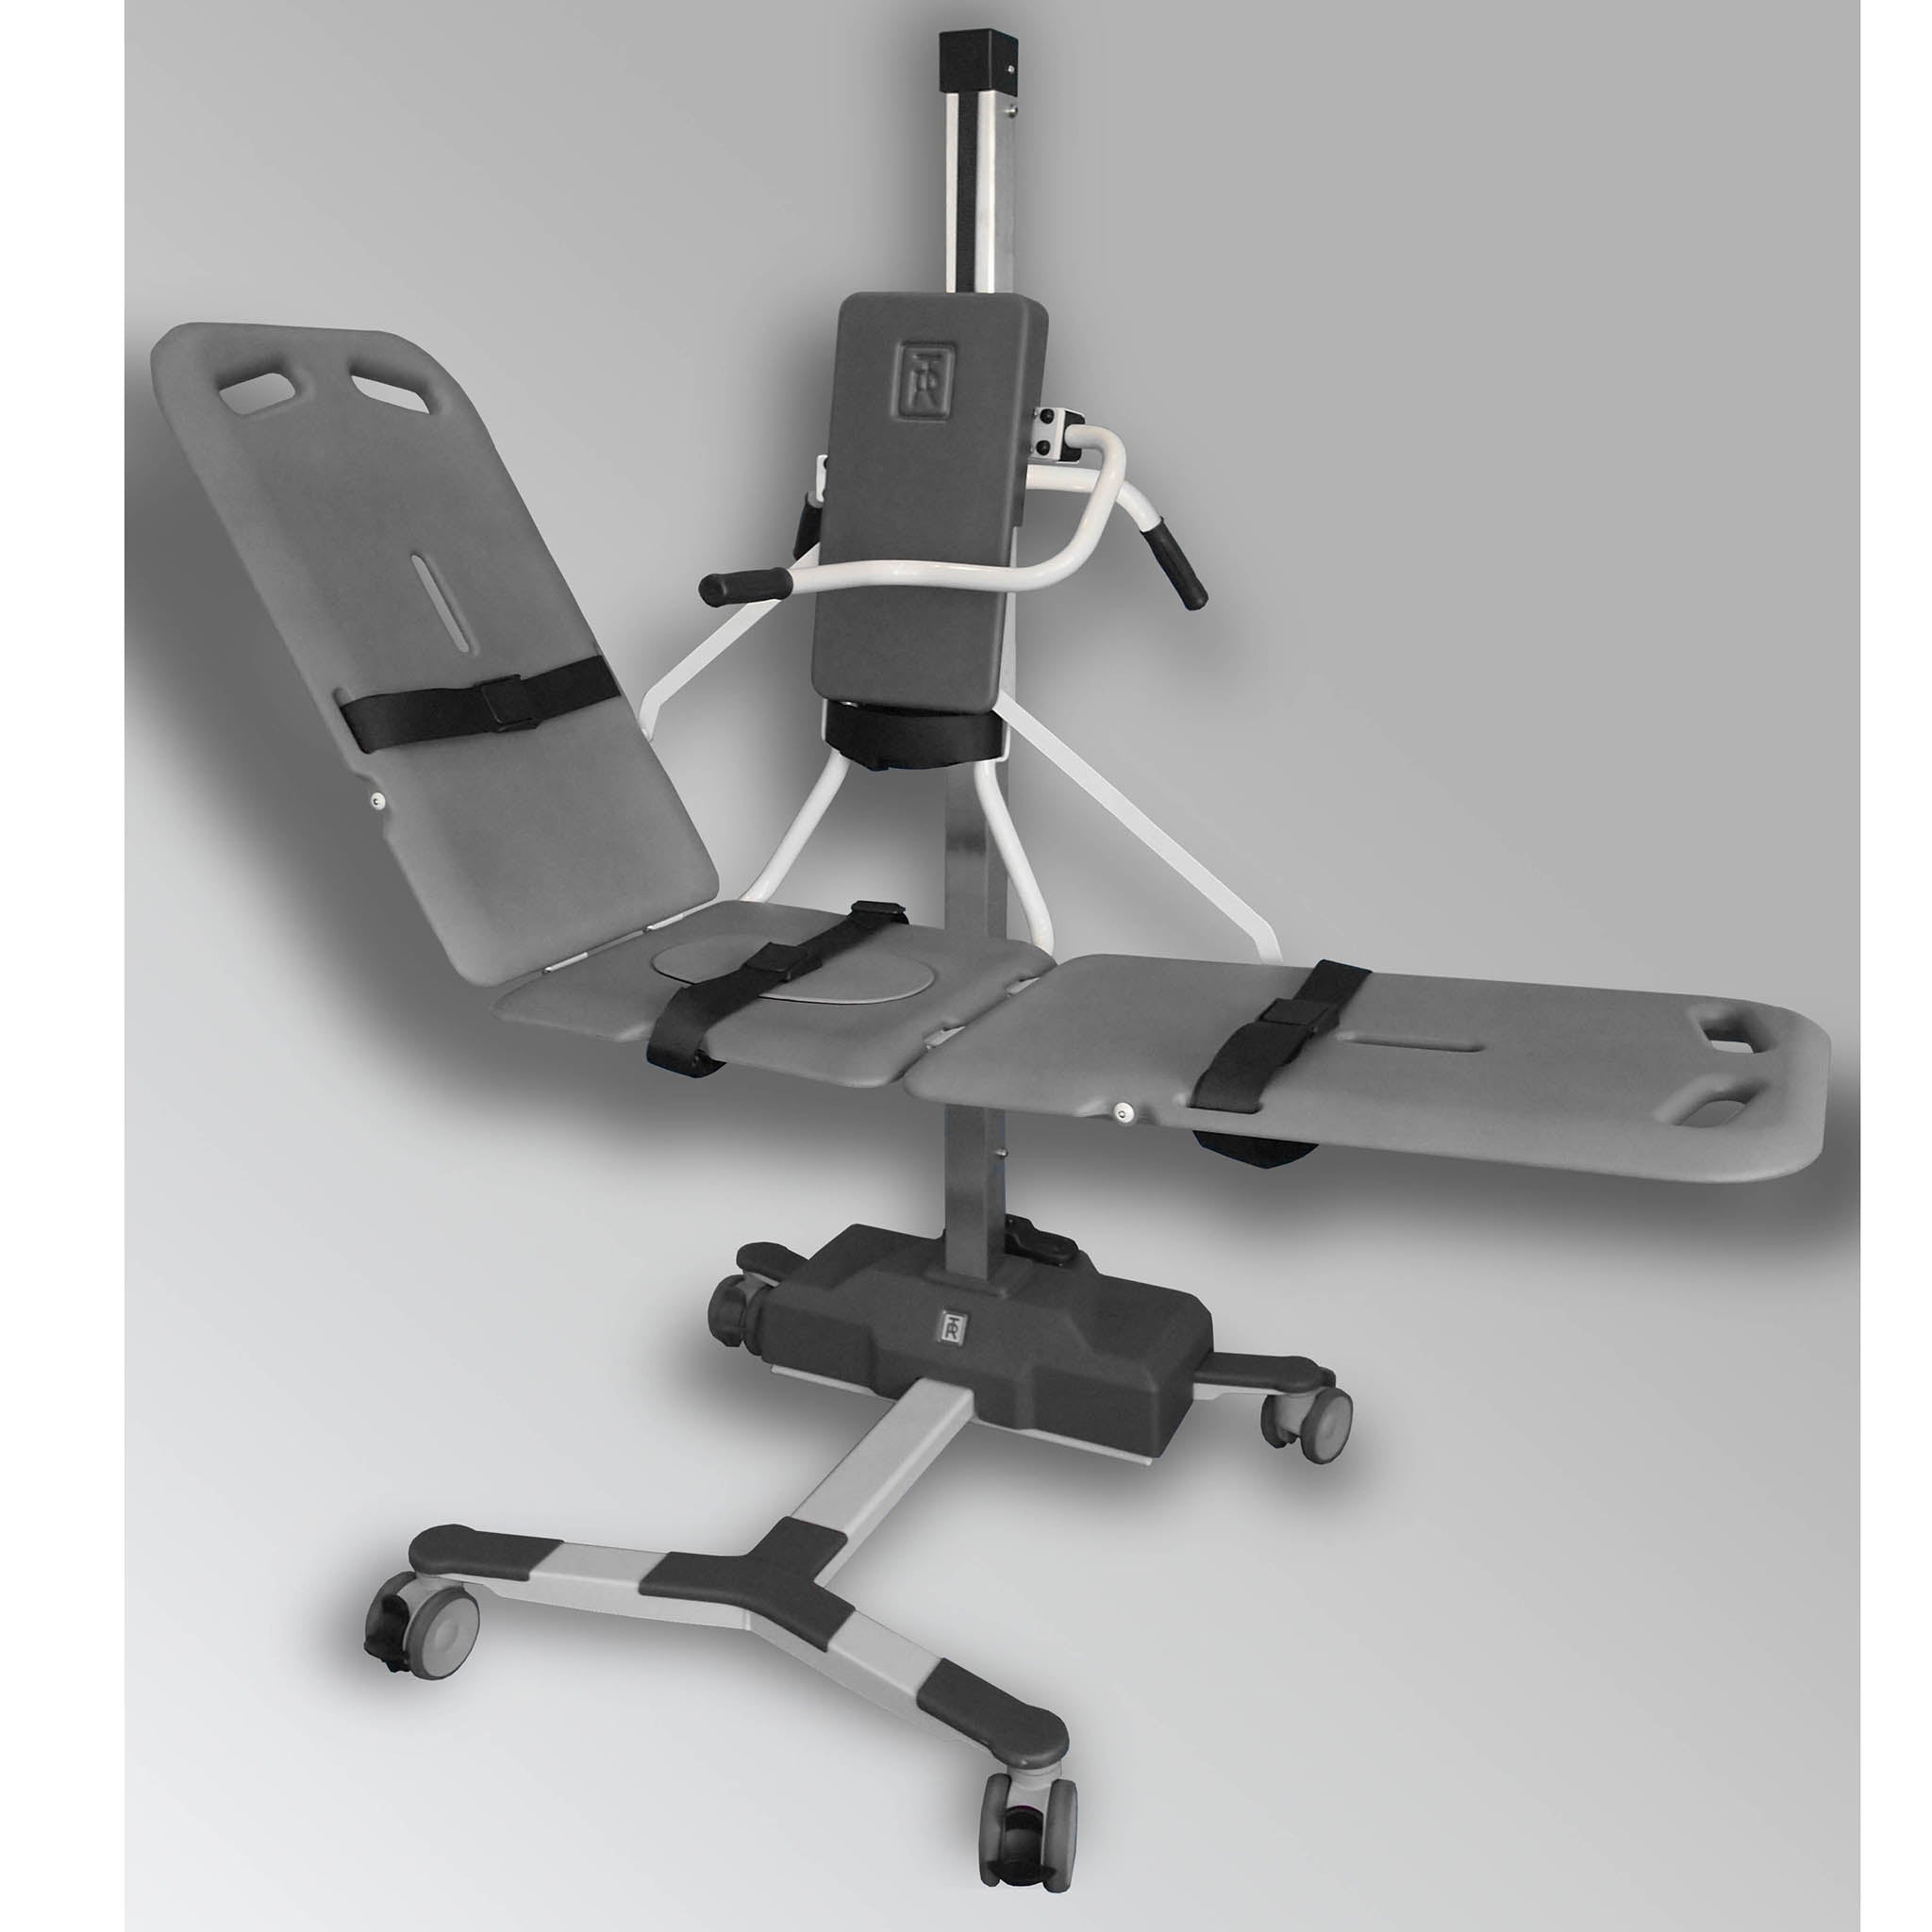 TR Equipment TR9650 Mobile Patient Bath Stretcher Lift